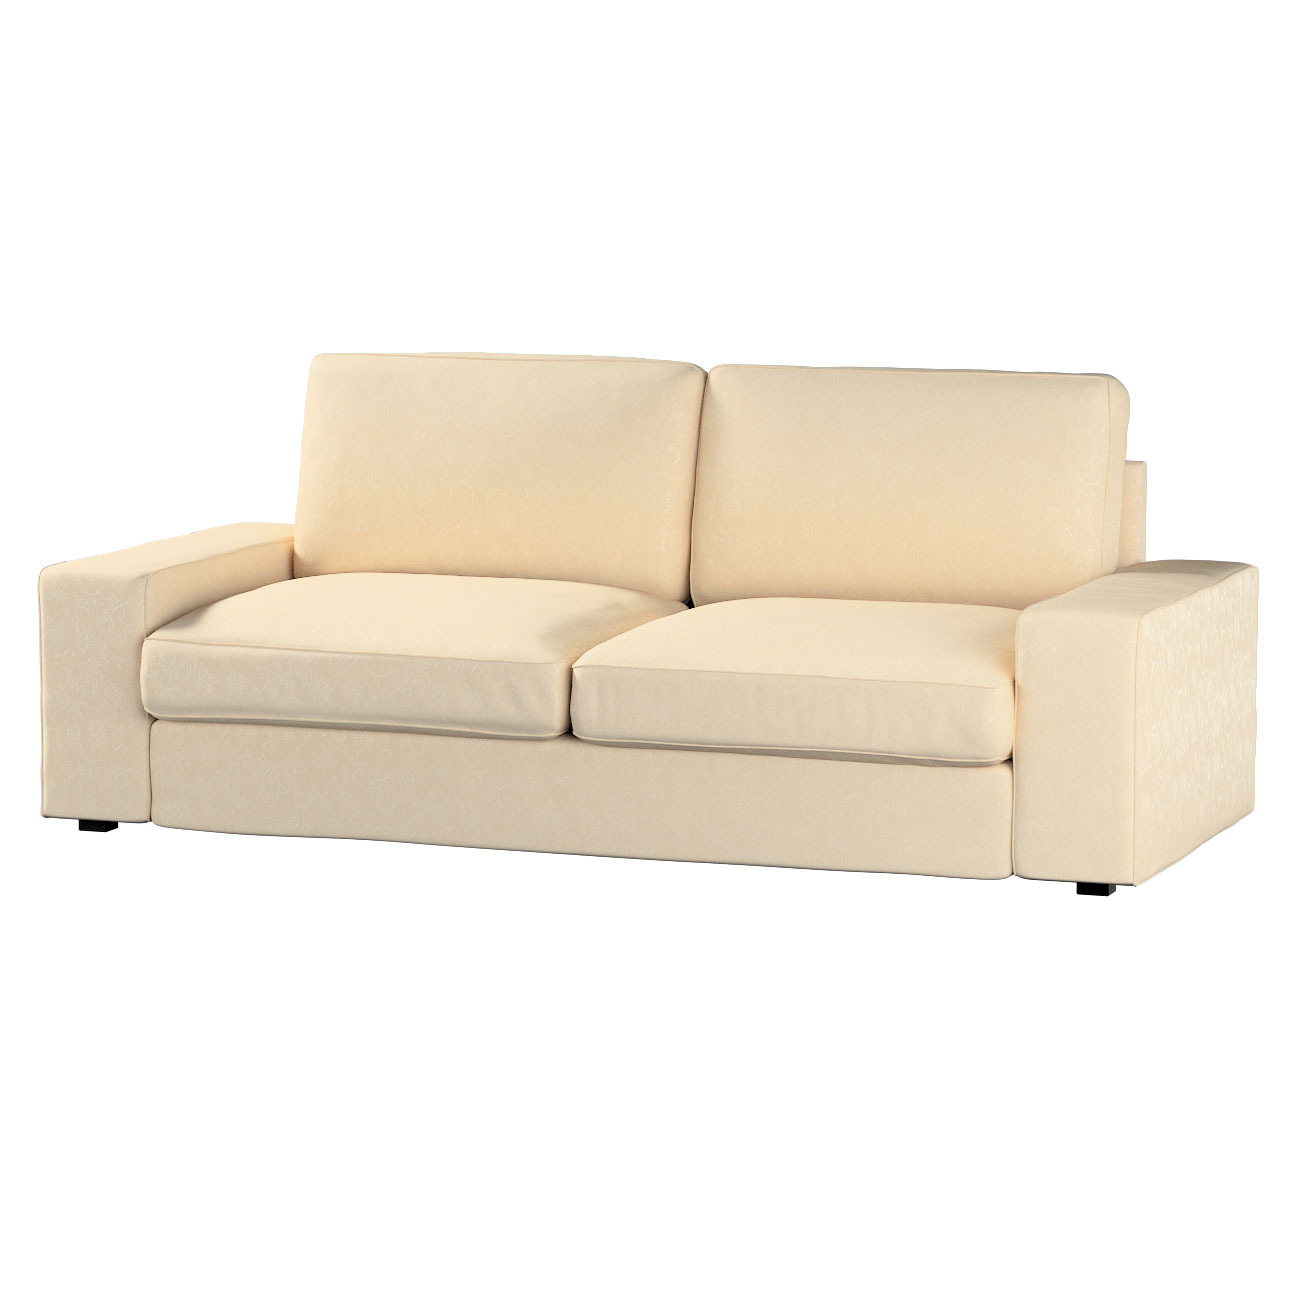 Bezug für Kivik 3-Sitzer Sofa, ecru, Bezug für Sofa Kivik 3-Sitzer, Living günstig online kaufen